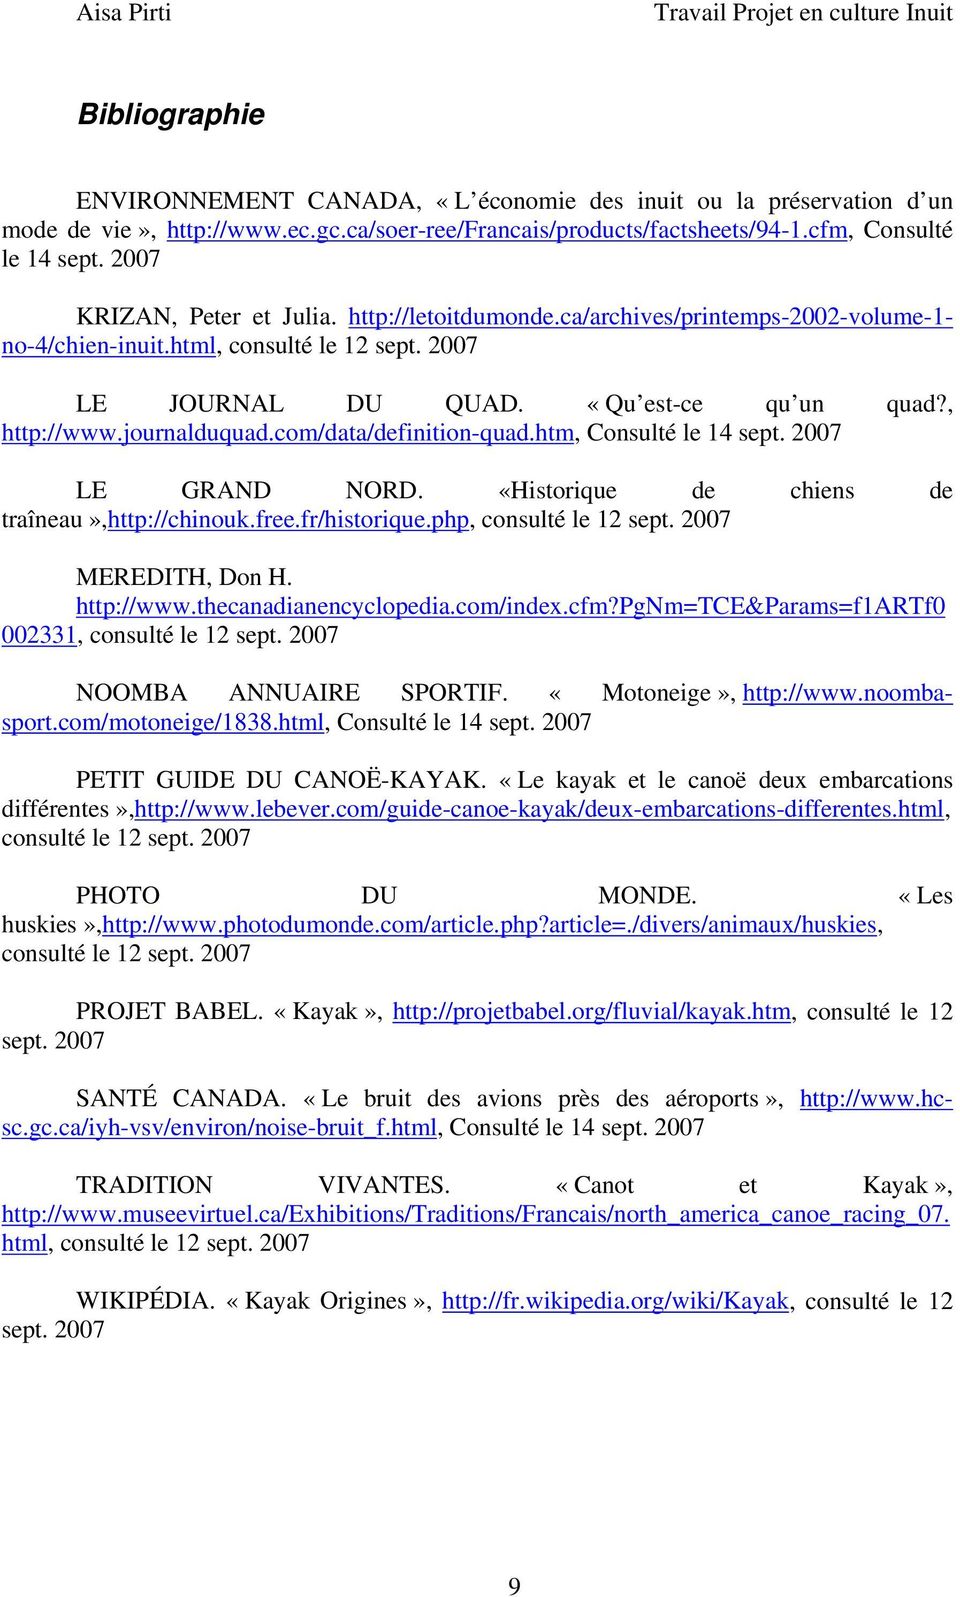 journalduquad.com/data/definition-quad.htm, Consulté le 14 sept. 2007 LE GRAND NORD. «Historique de chiens de traîneau»,http://chinouk.free.fr/historique.php, consulté le 12 sept.